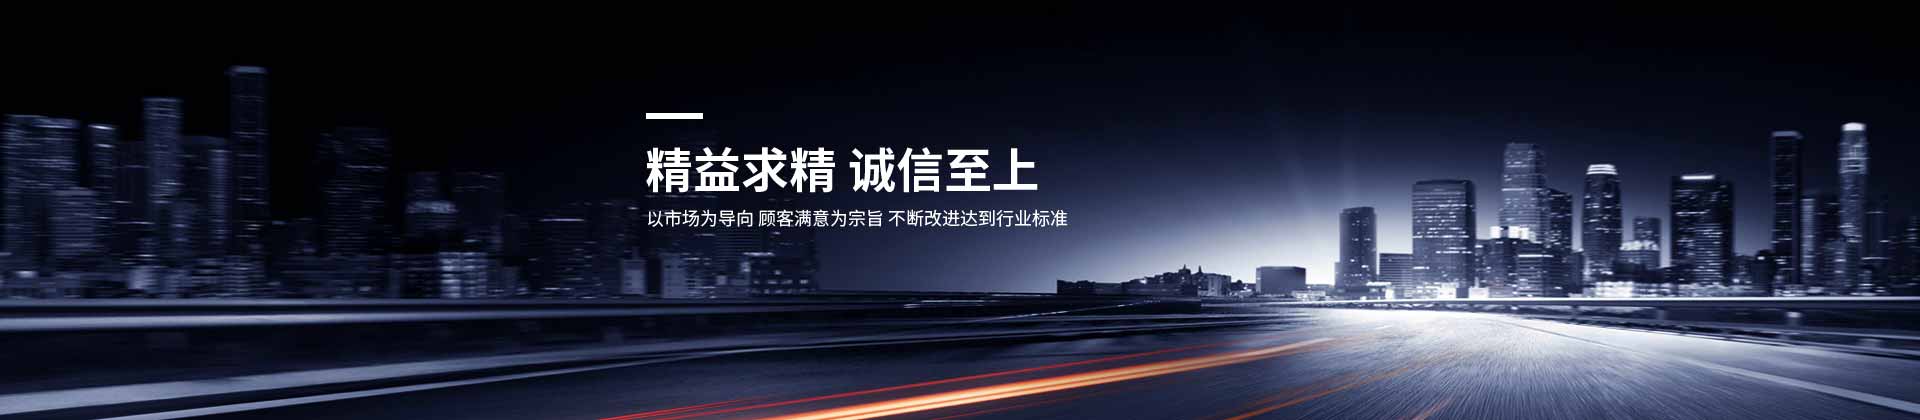 皇冠游戏官方网站(中国)有限公司官网设计